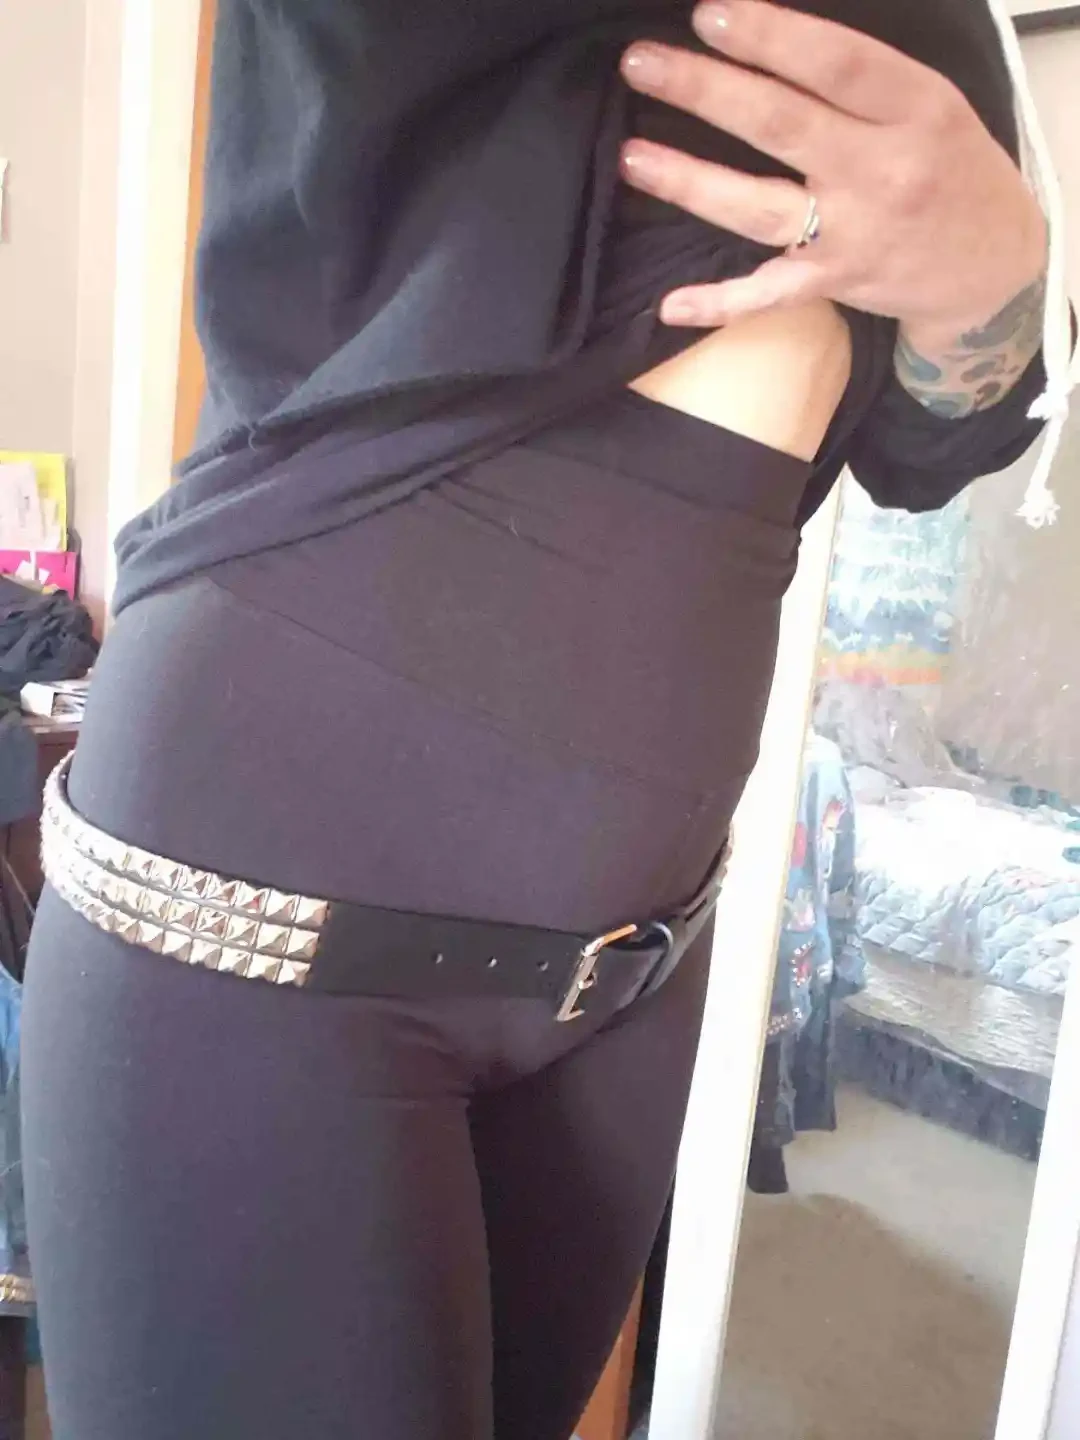 Buy Geifa Women Body Shaper Tummy Control Panty - Comfy Full